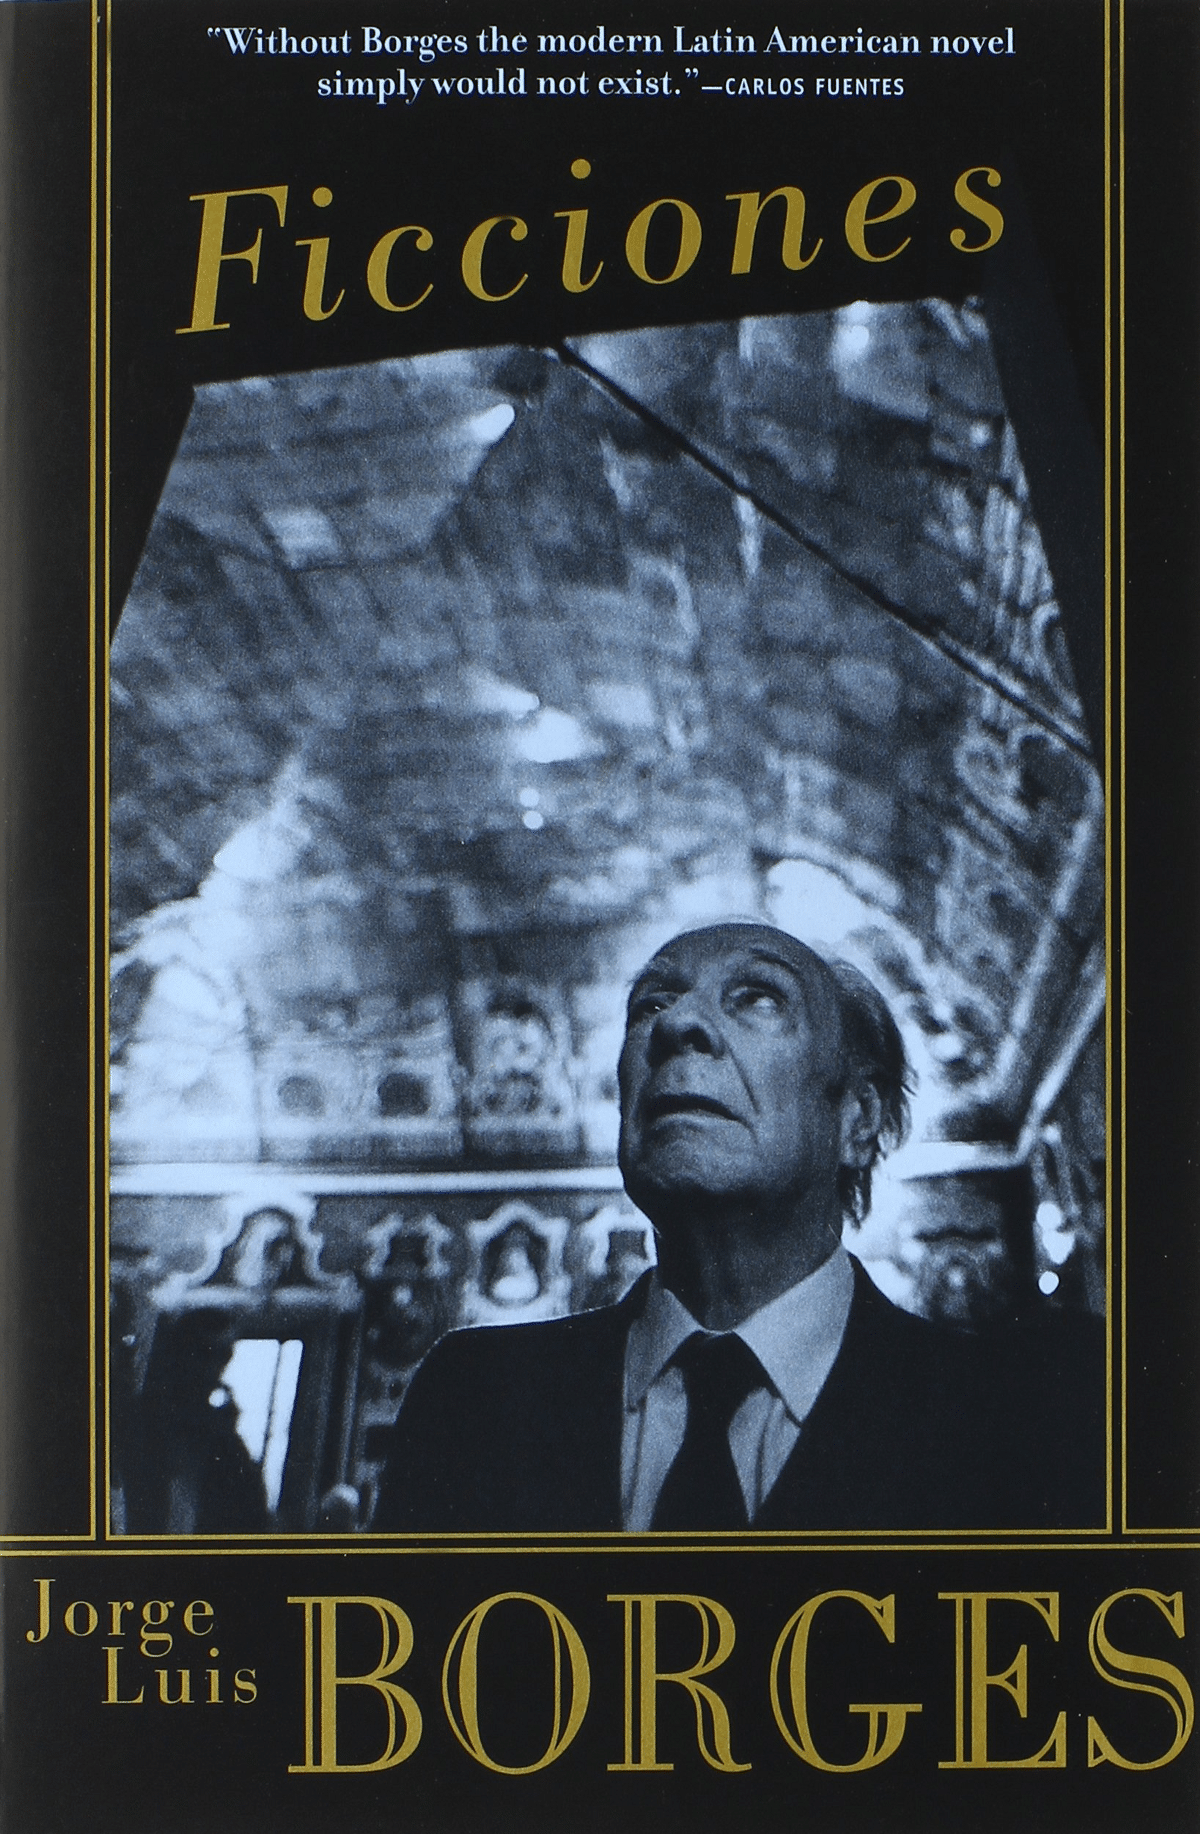 Ficciones de Jorge Luis Borges: resumen, análisis, y mas